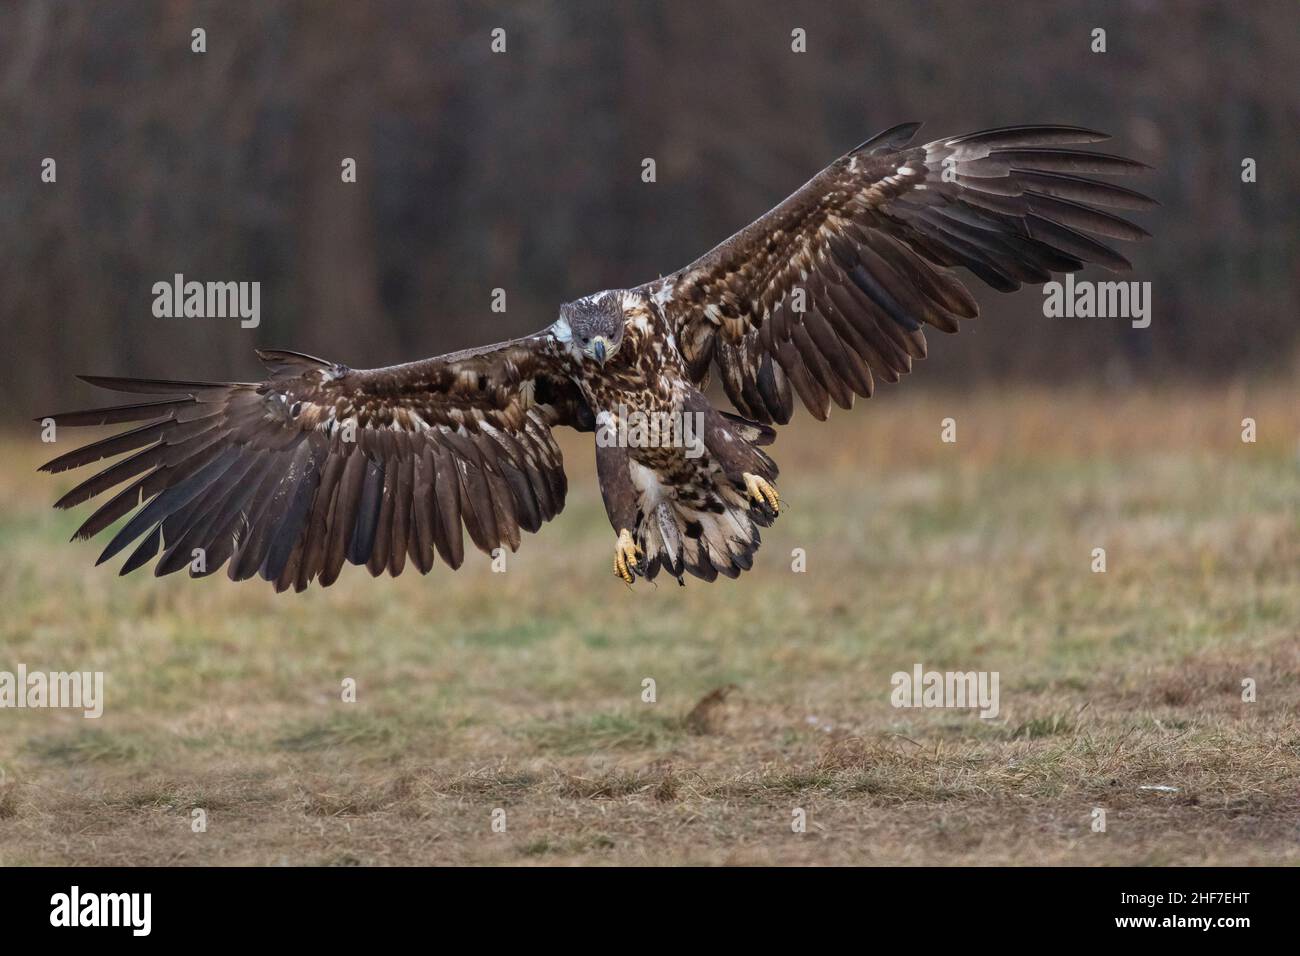 White-tailed eagle (Haliaeetus albicilla) on approach,  Poland Stock Photo